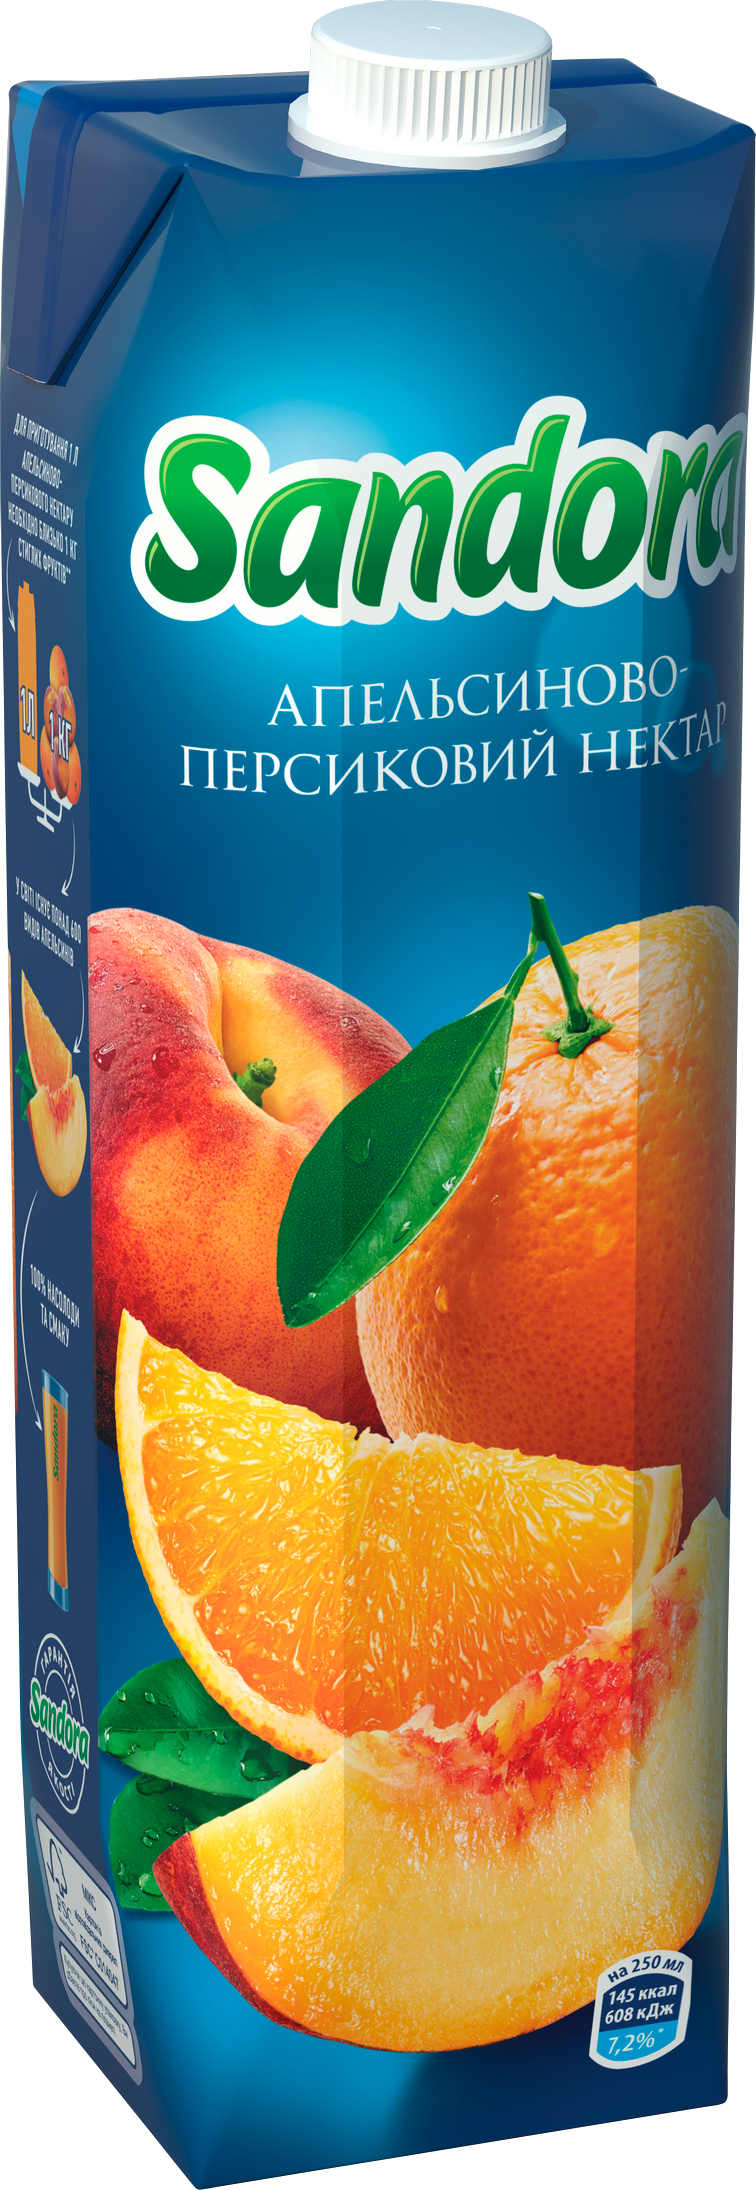 Акция на Упаковка нектара Sandora Апельсиново-персиковый 0.95 л х 10 шт (4823063112932) от Rozetka UA